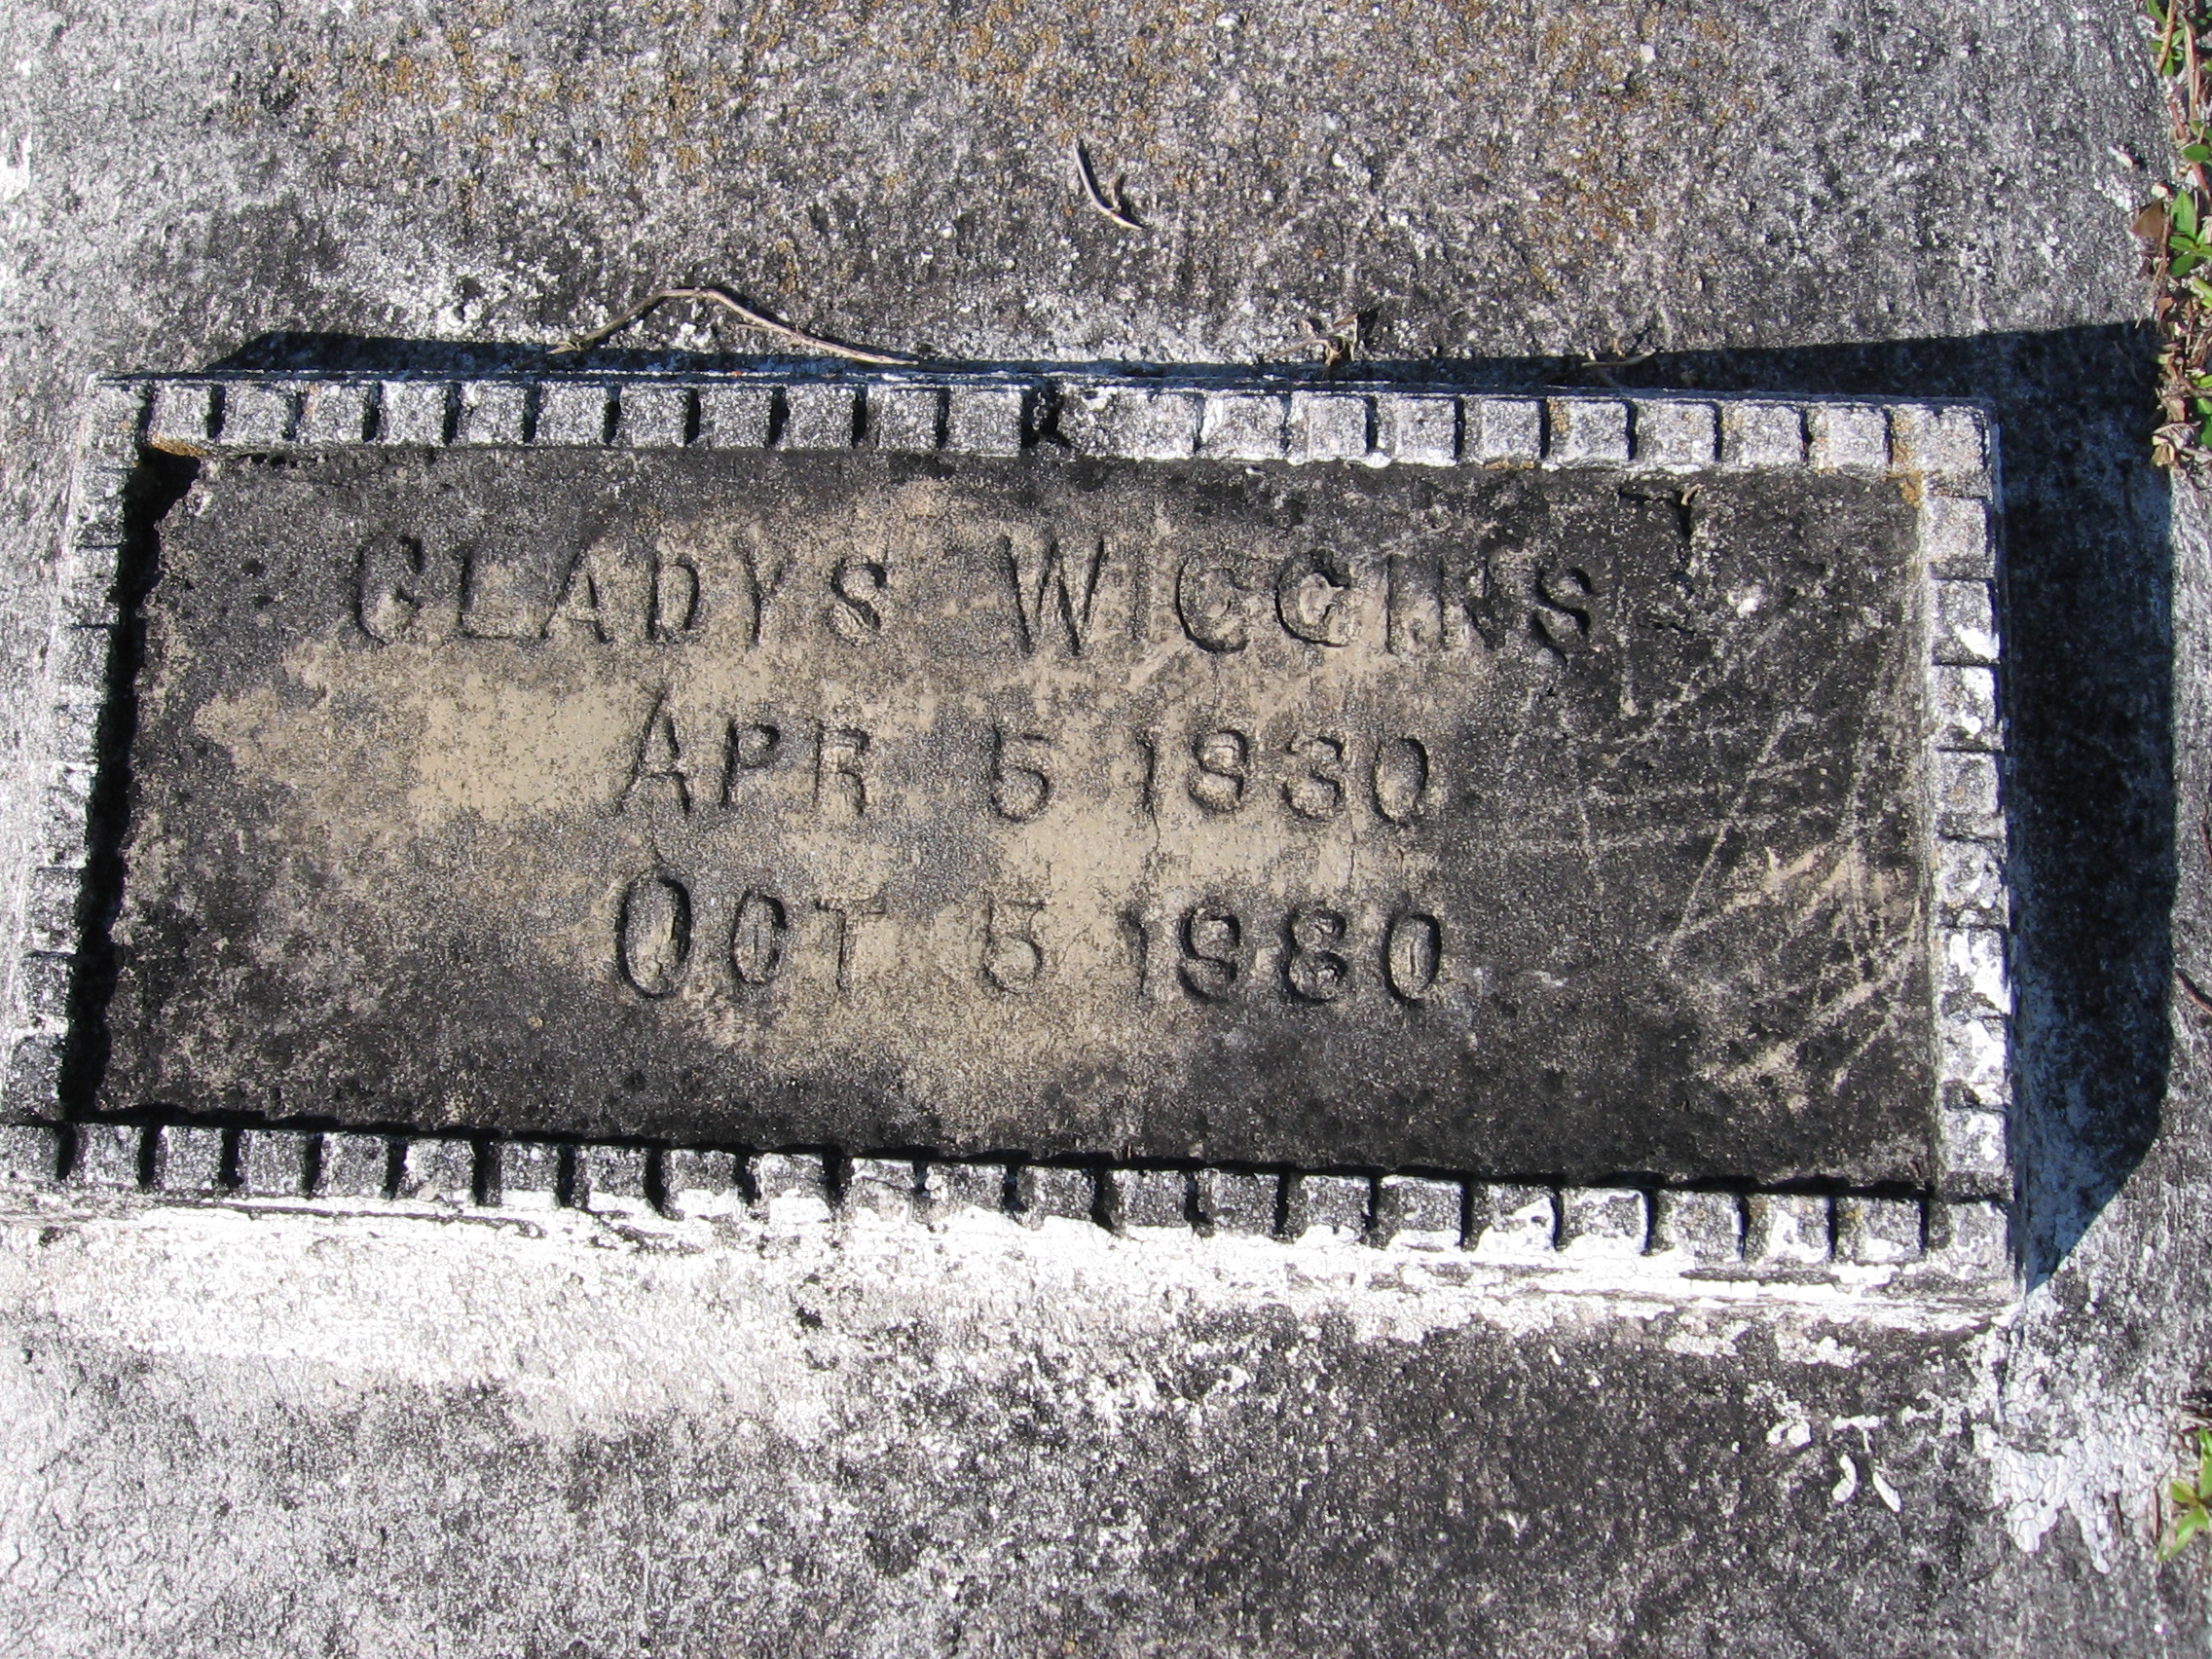 Gladys Wiggins